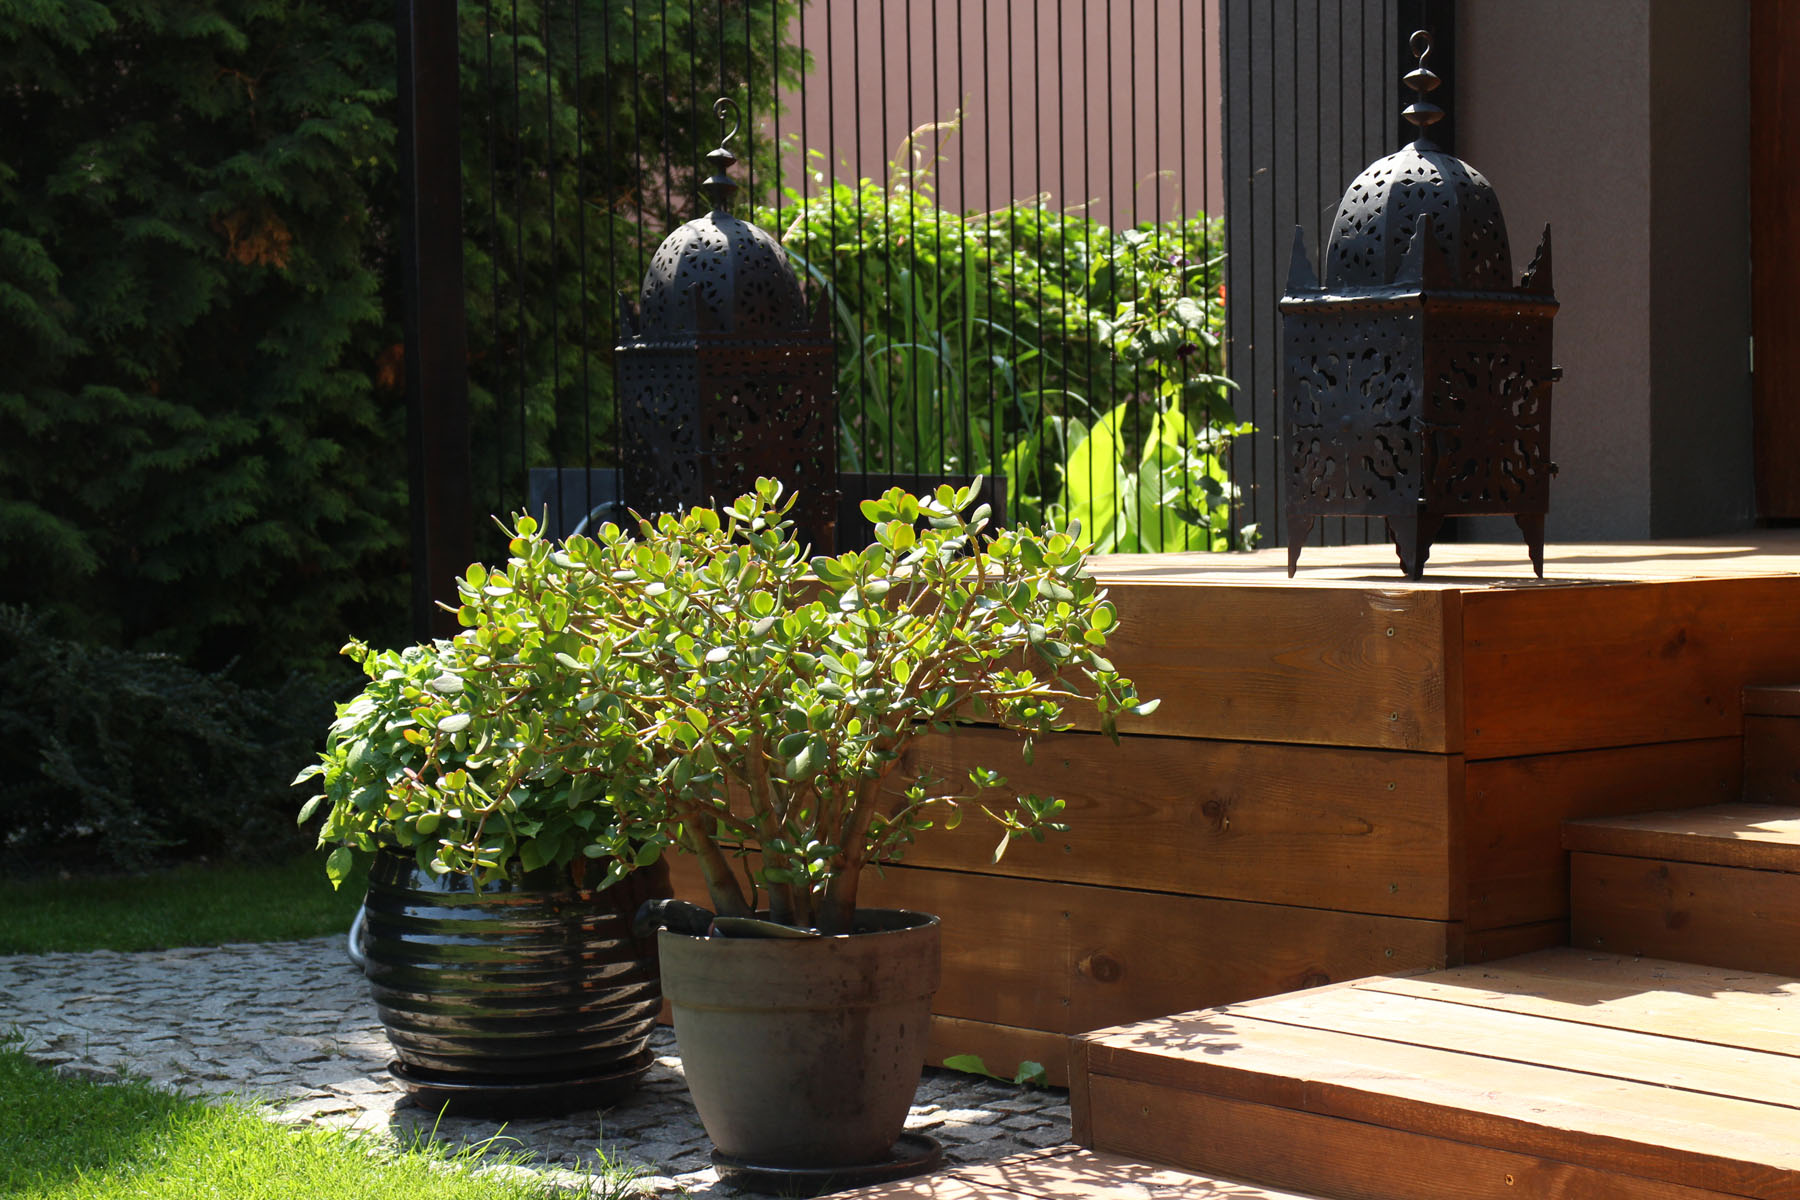 Rośliny Azjatycki styl w ogrodzie Malowniczy ogród na Ochocie Strefa relaksu w miejskim ogrodzie Ogród jako drugi salon Wnętrze ogrodowe Dom i ogród Tras w ogrodzie Klimat w ogrodzie